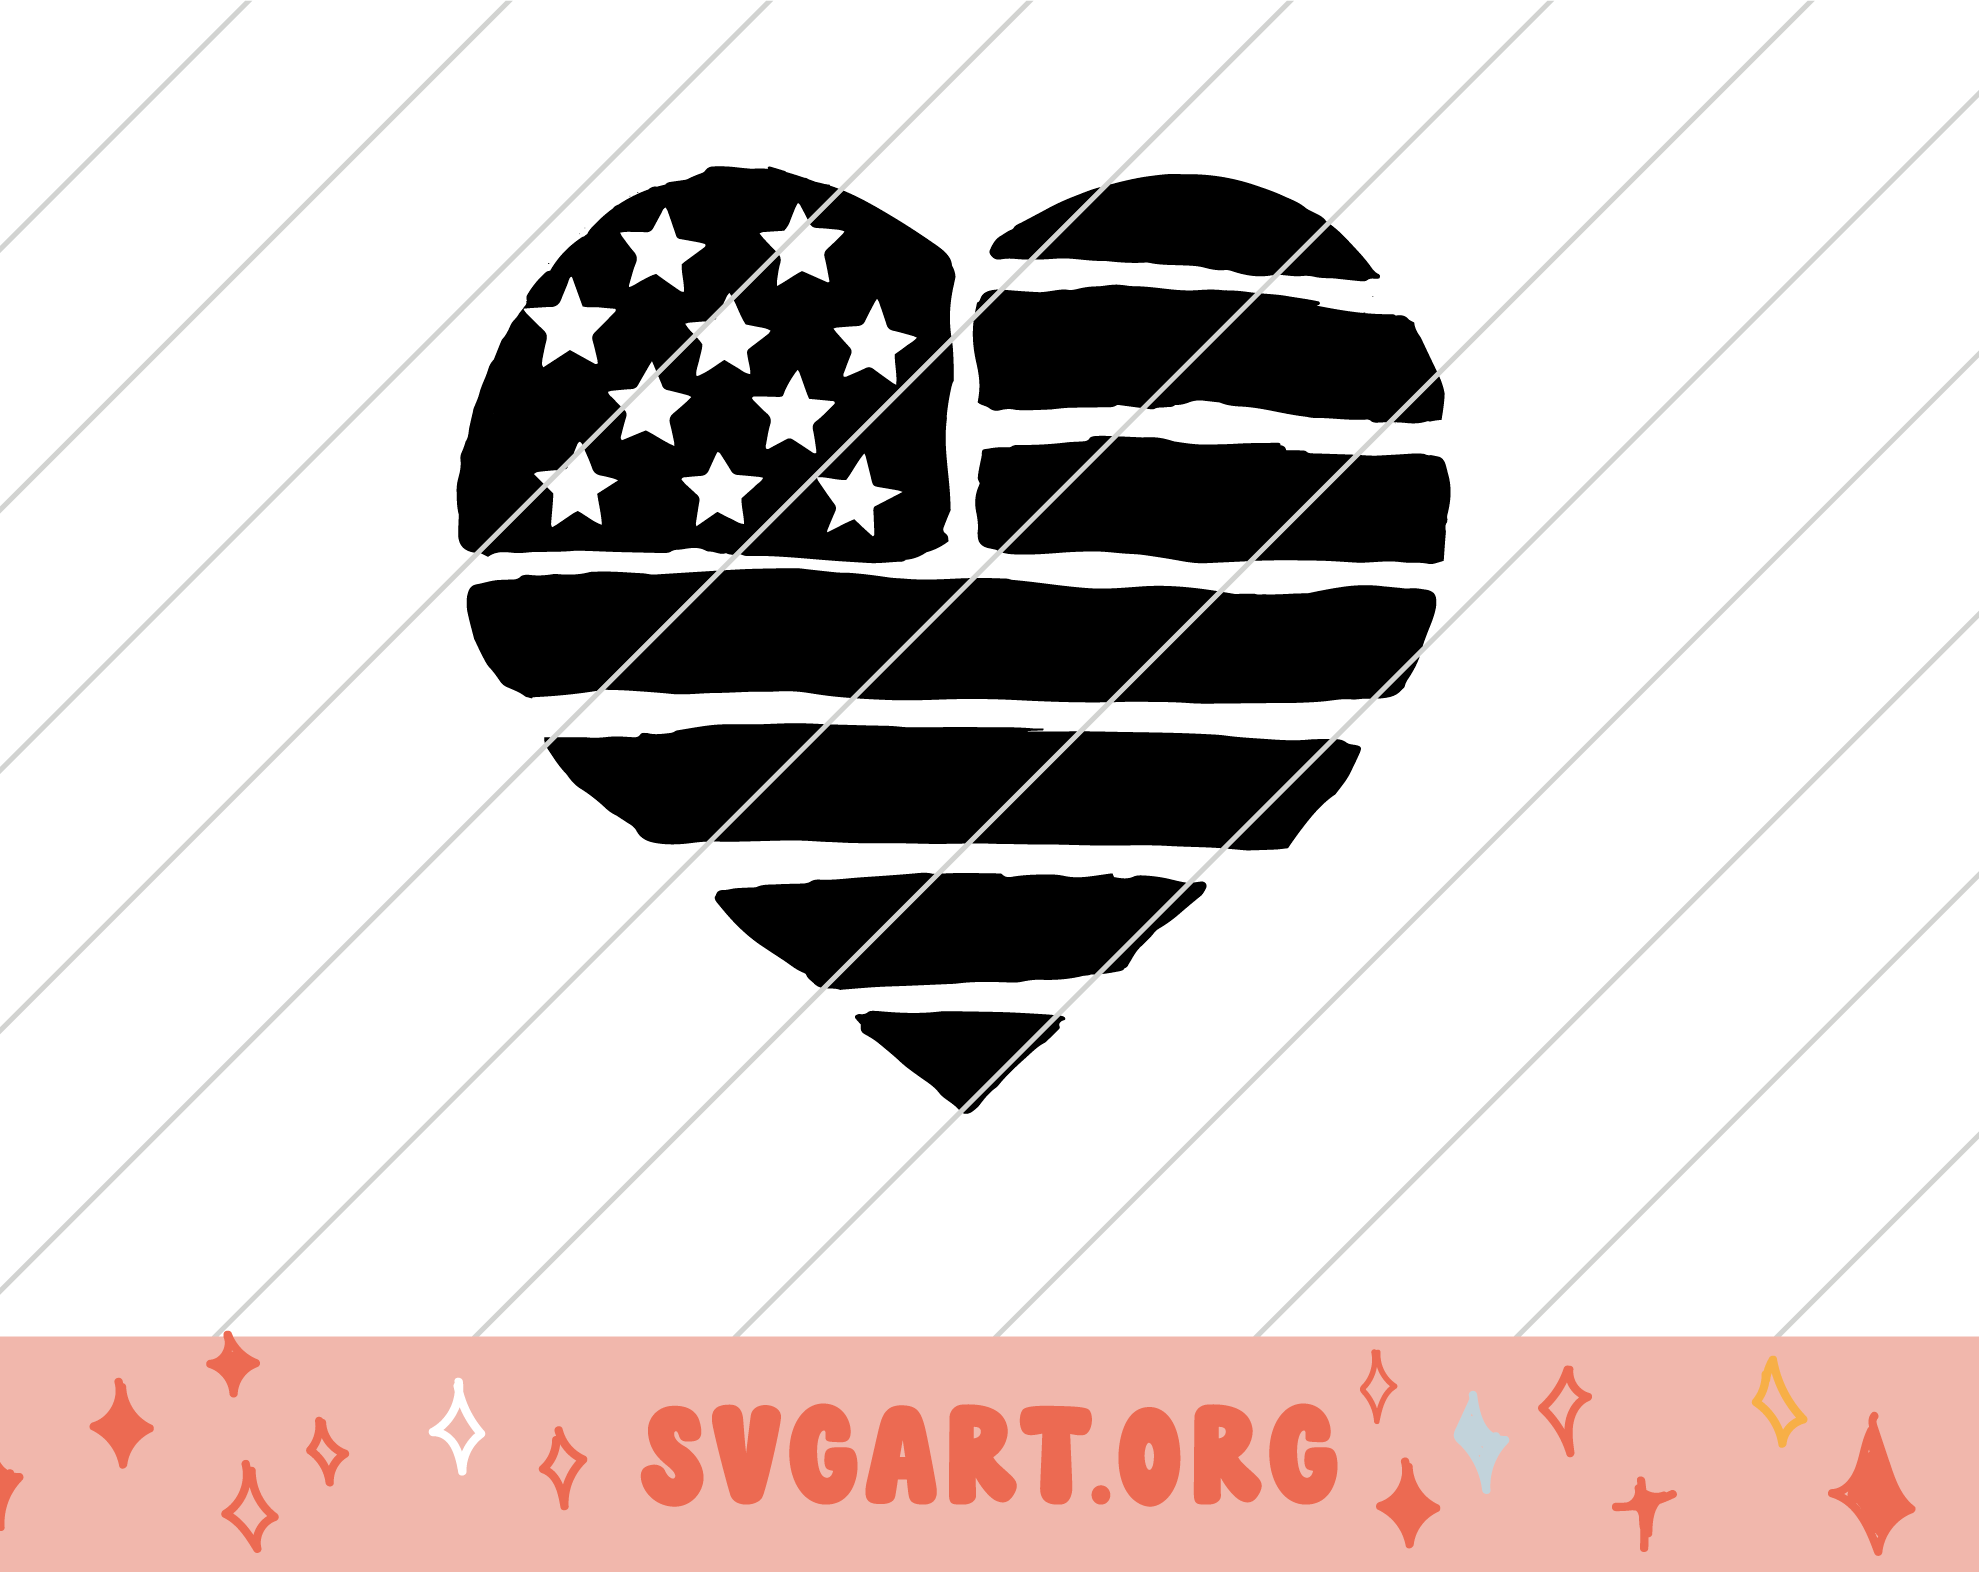 Heart Shaped American Flag SVG - Free SVG Download - svg art